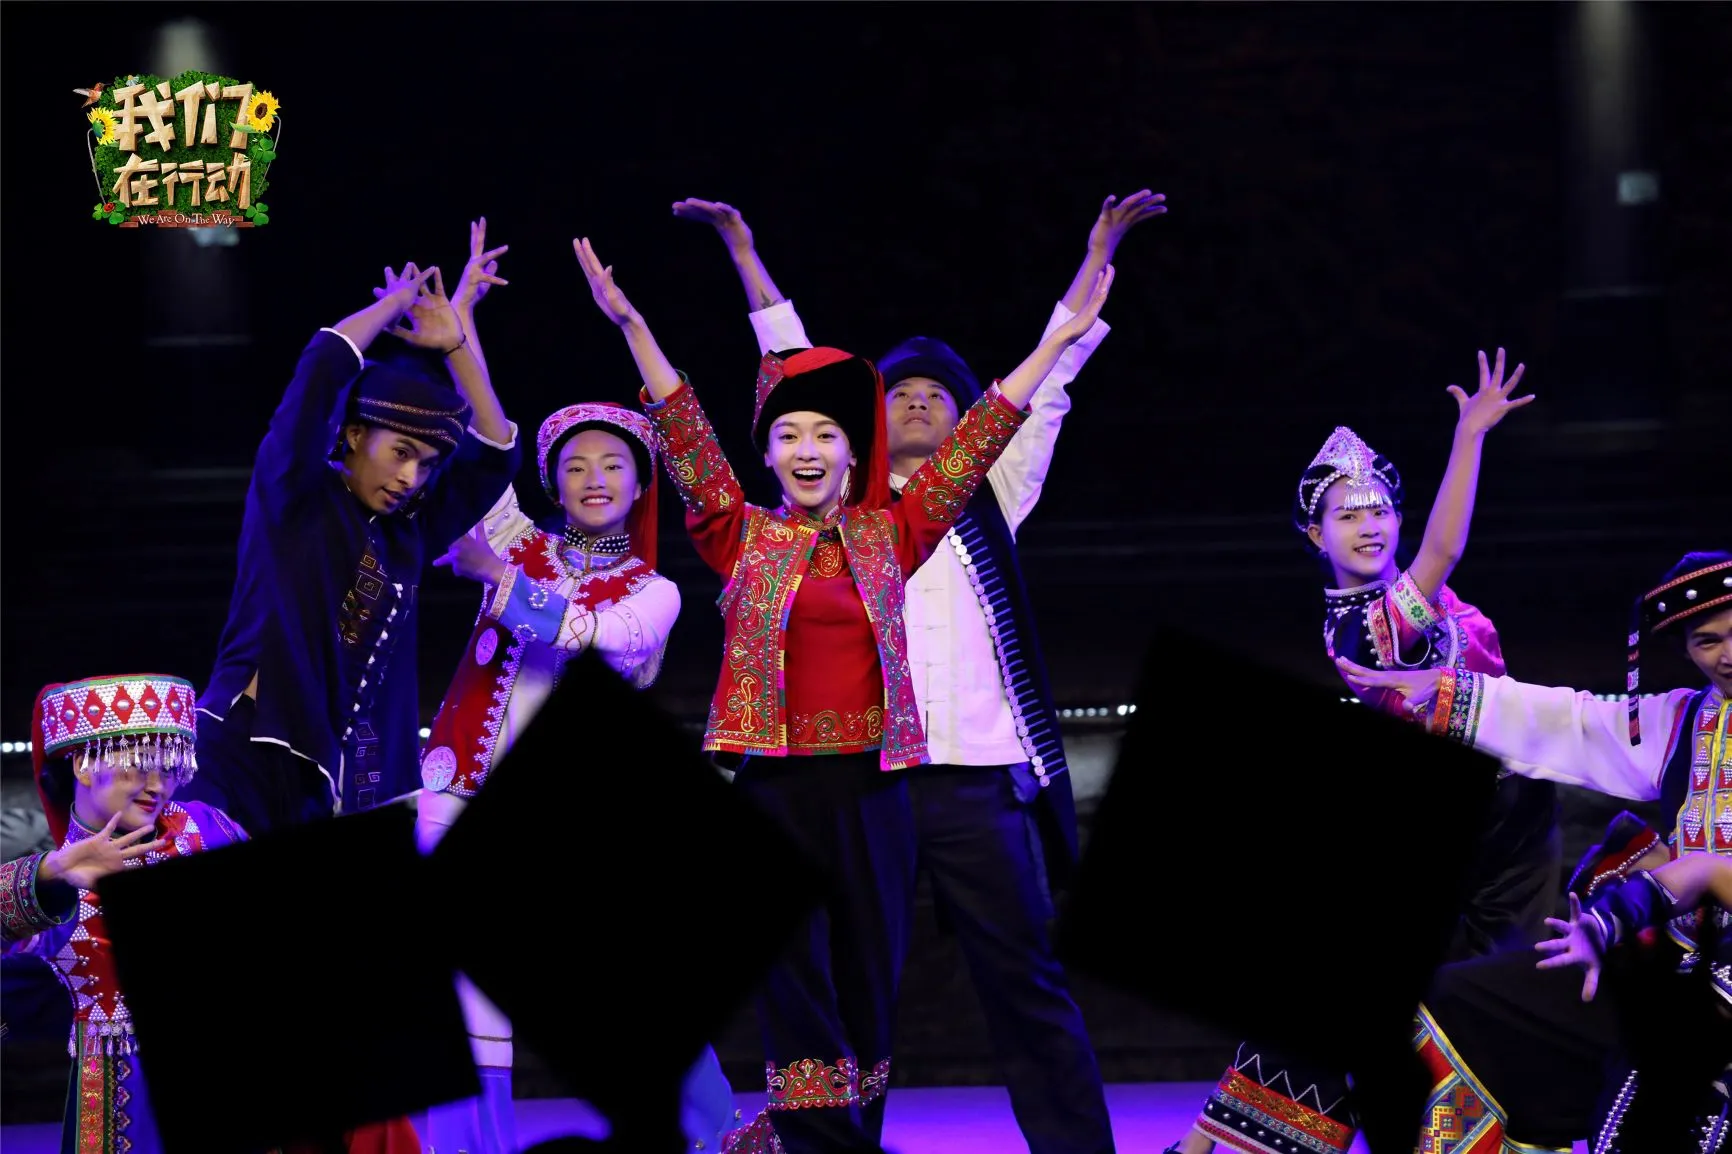  Jingyan Wu 身穿哈尼族服装和村民们跳起了活泼俏皮的哈尼族民族舞.jpg